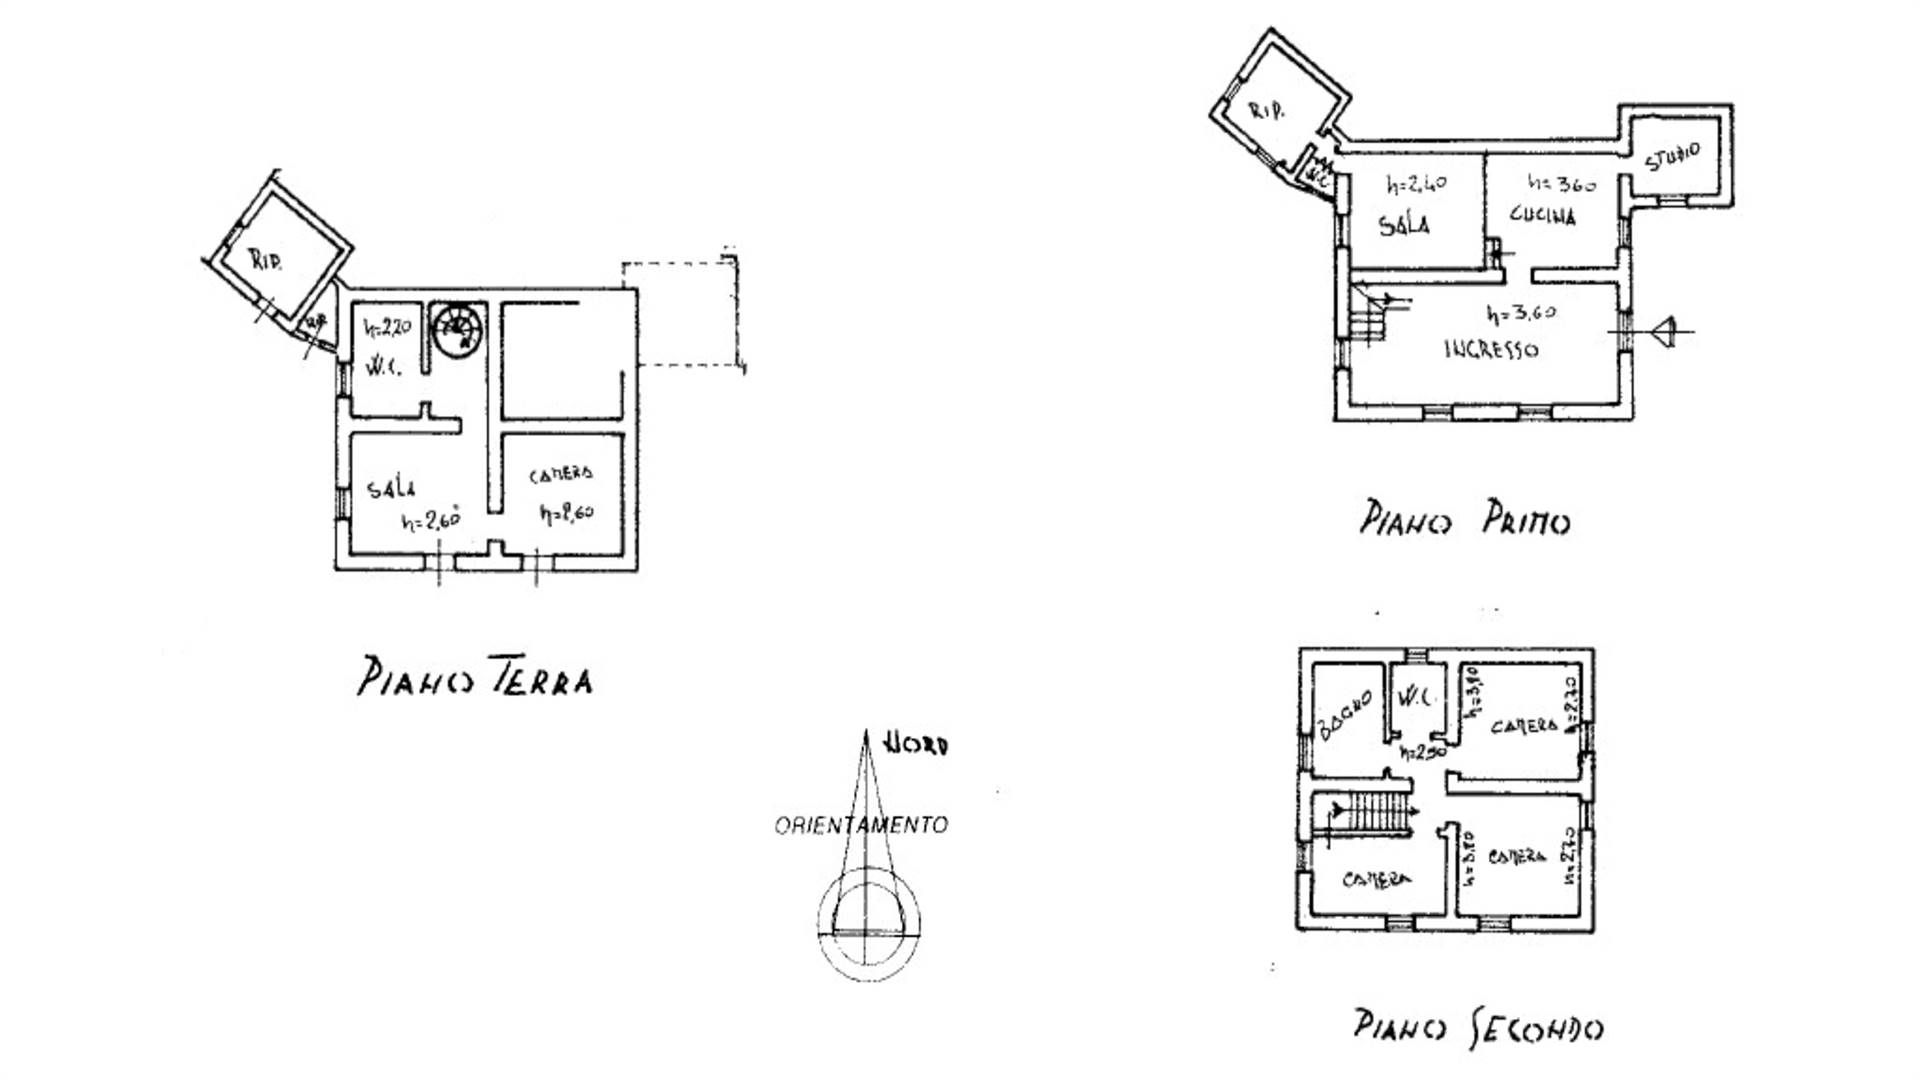 Planimetria casale - Farmhouse plan